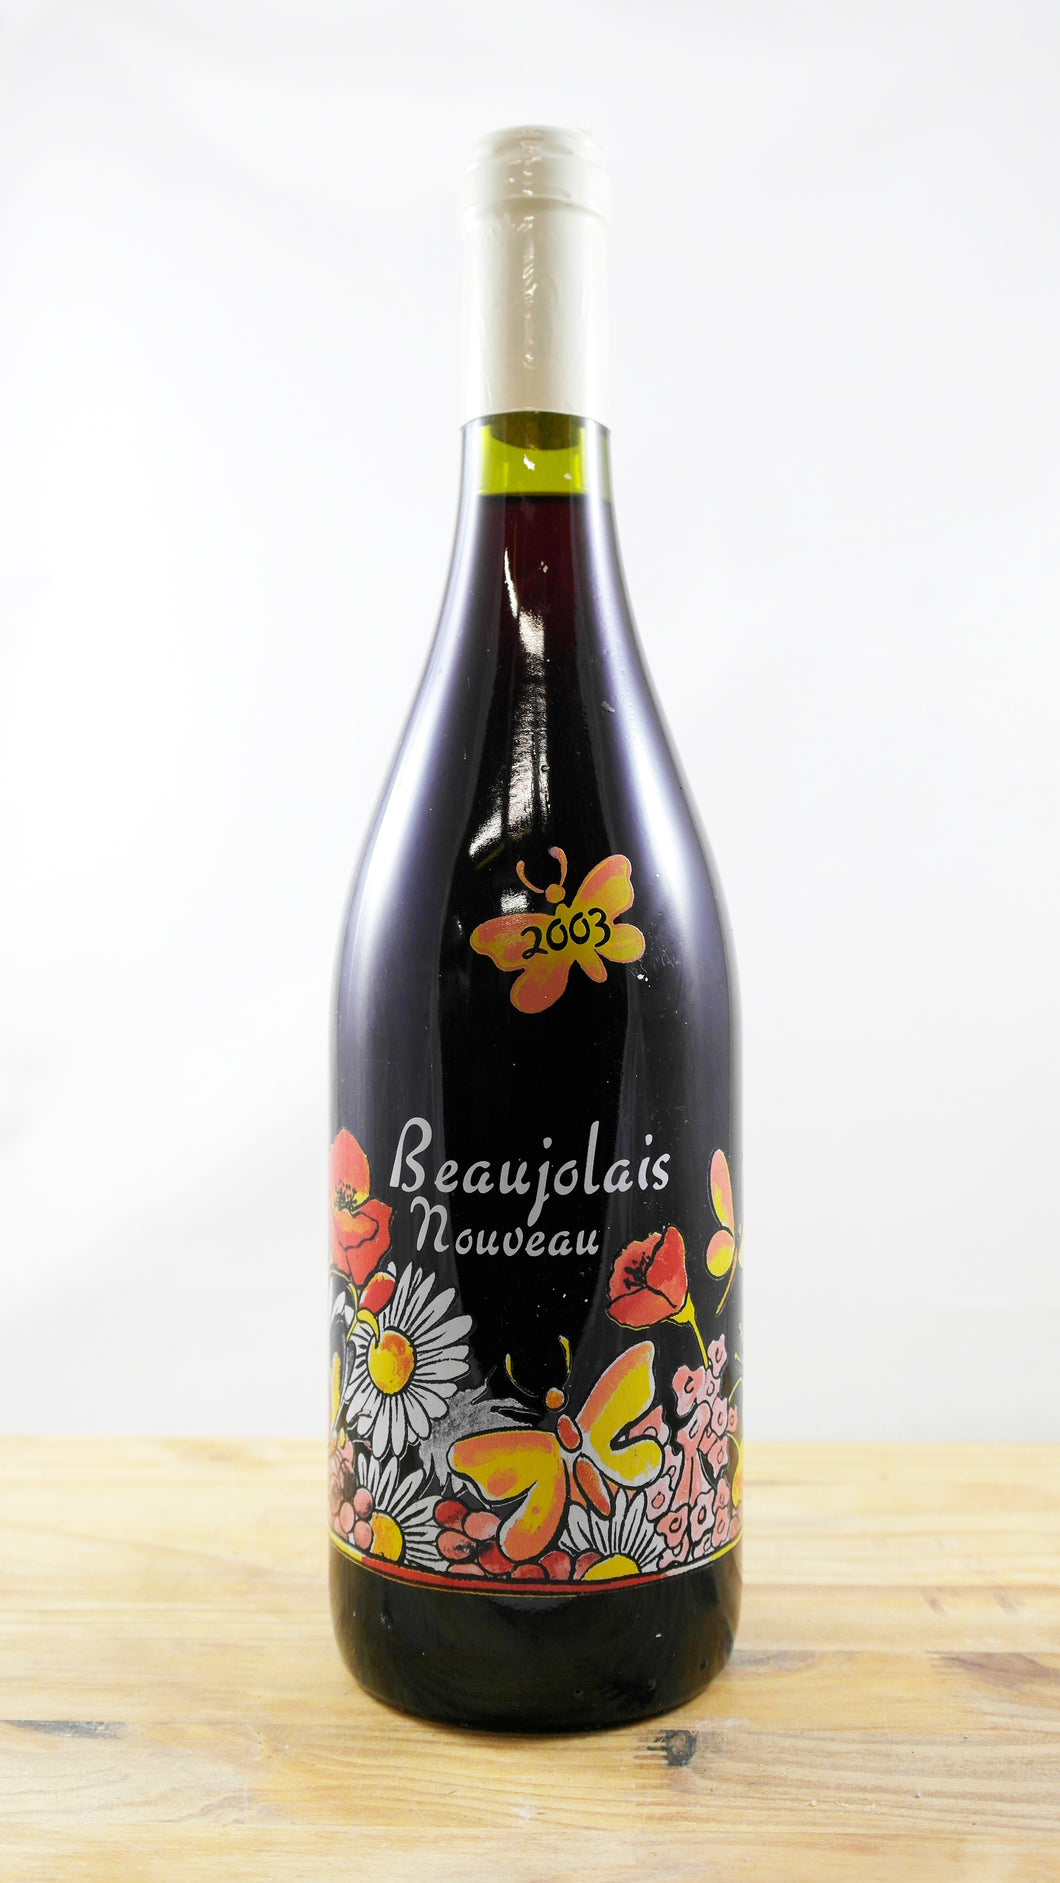 Vin Année 2003 Beaujolais Nouveau Vignes et Terroirs du Beaujolais